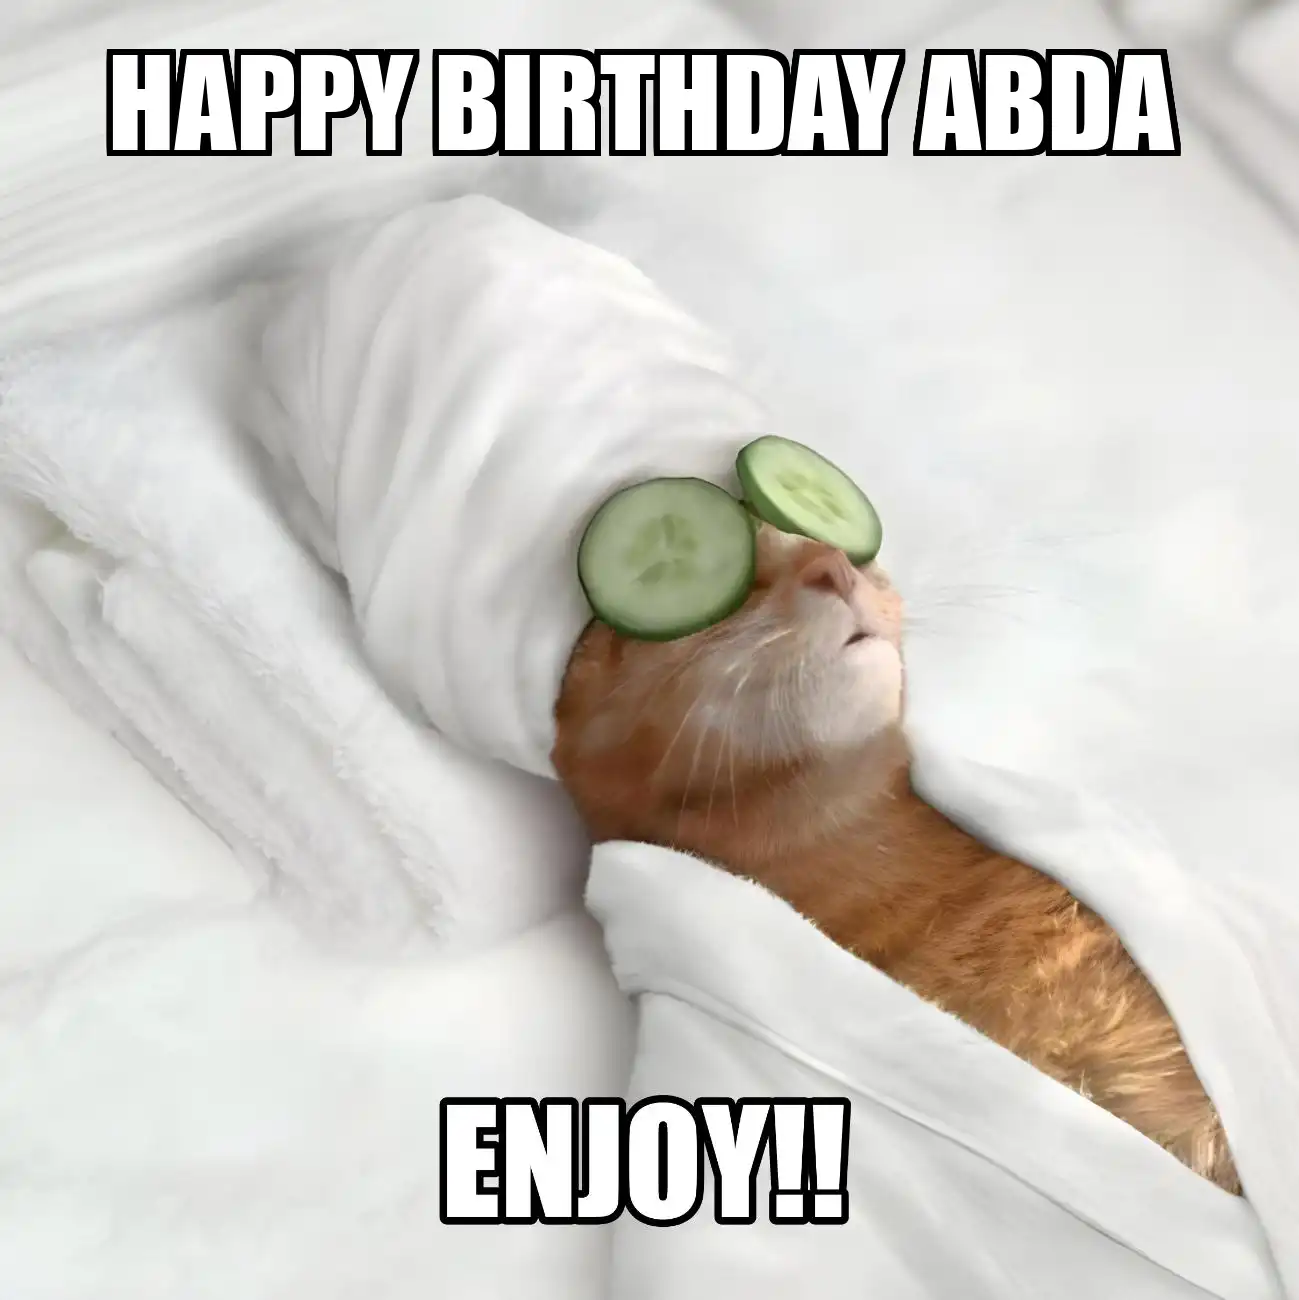 Happy Birthday Abda Enjoy Cat Meme